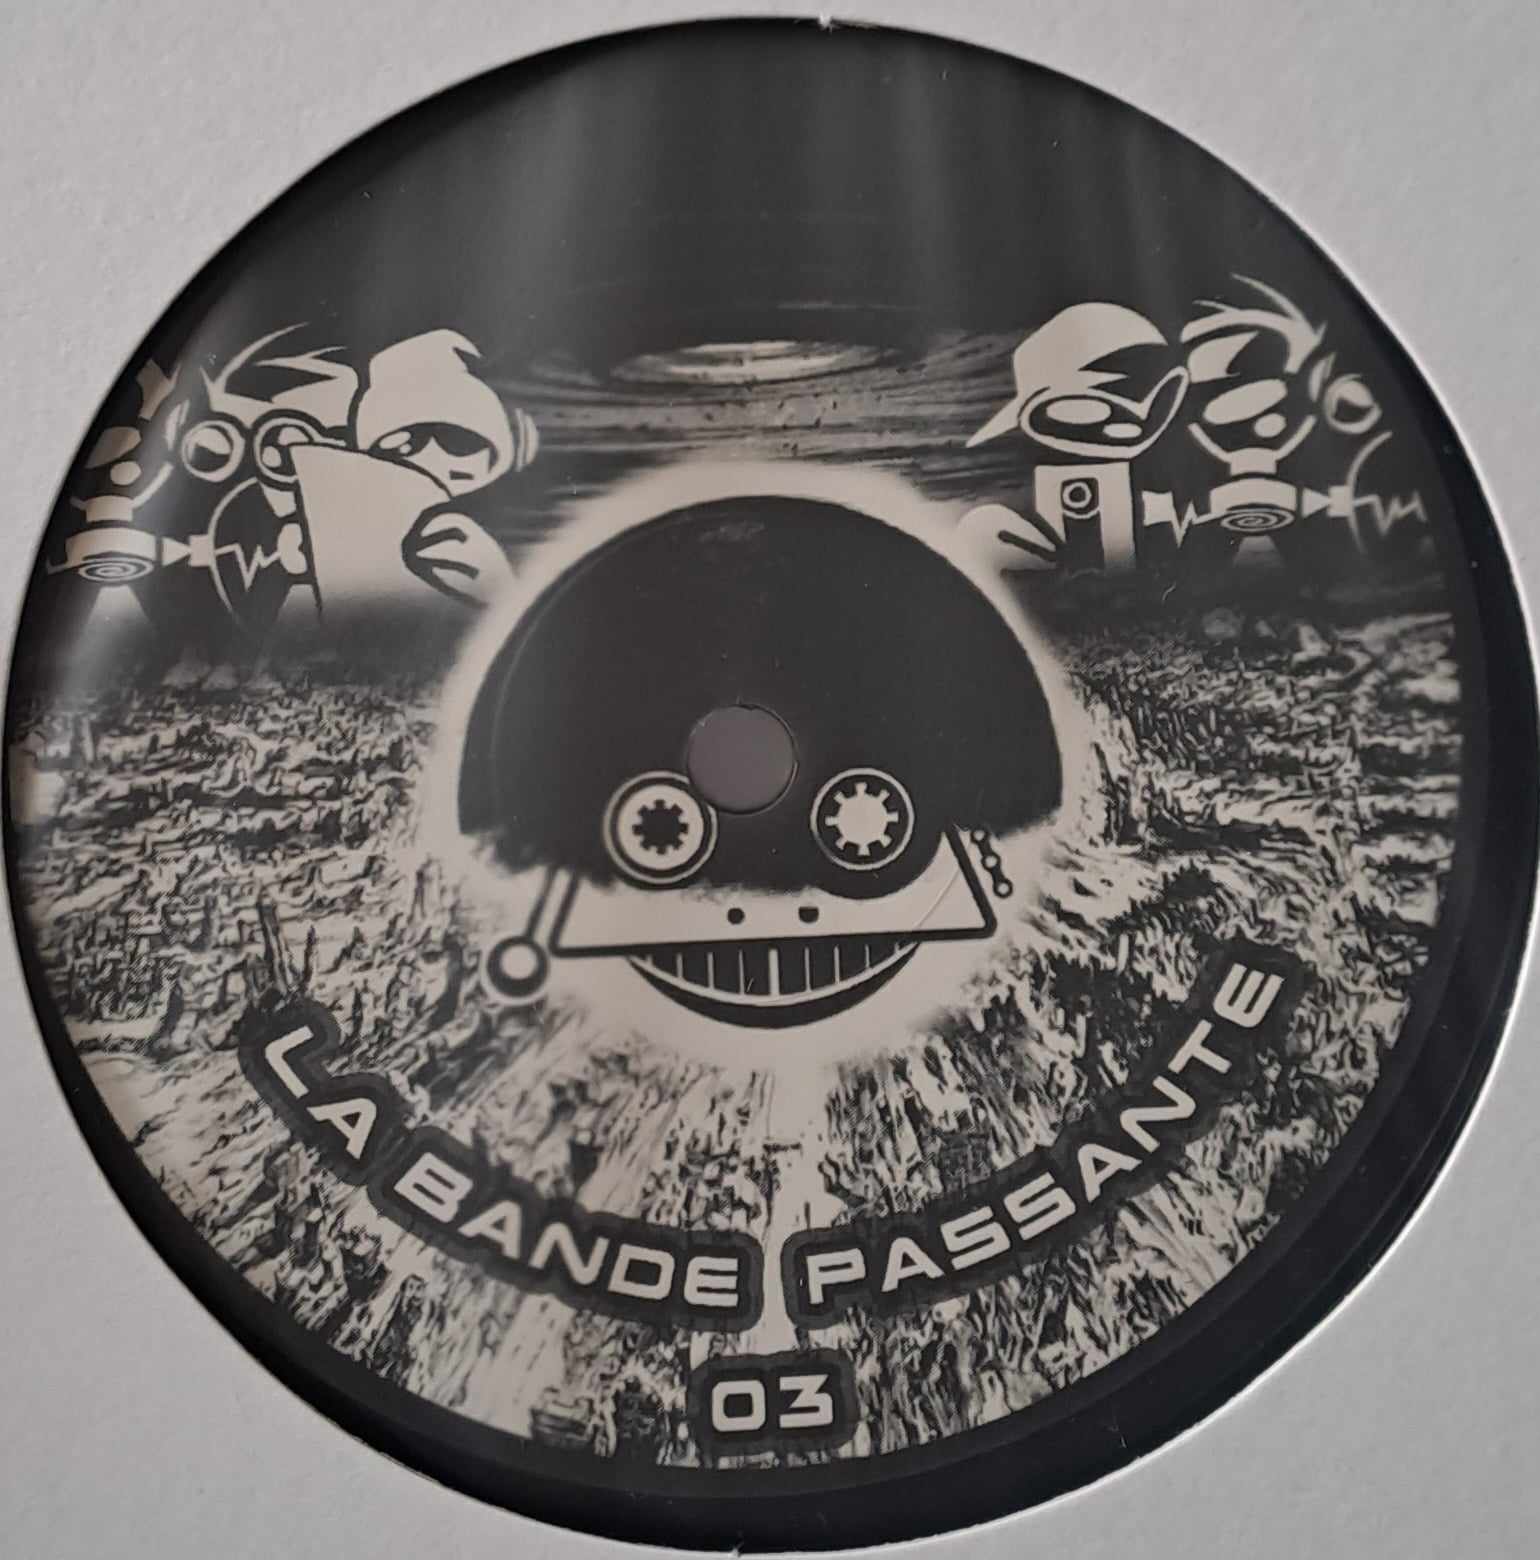 La Bande Passante 03 (dernières copies en stock) - vinyle freetekno